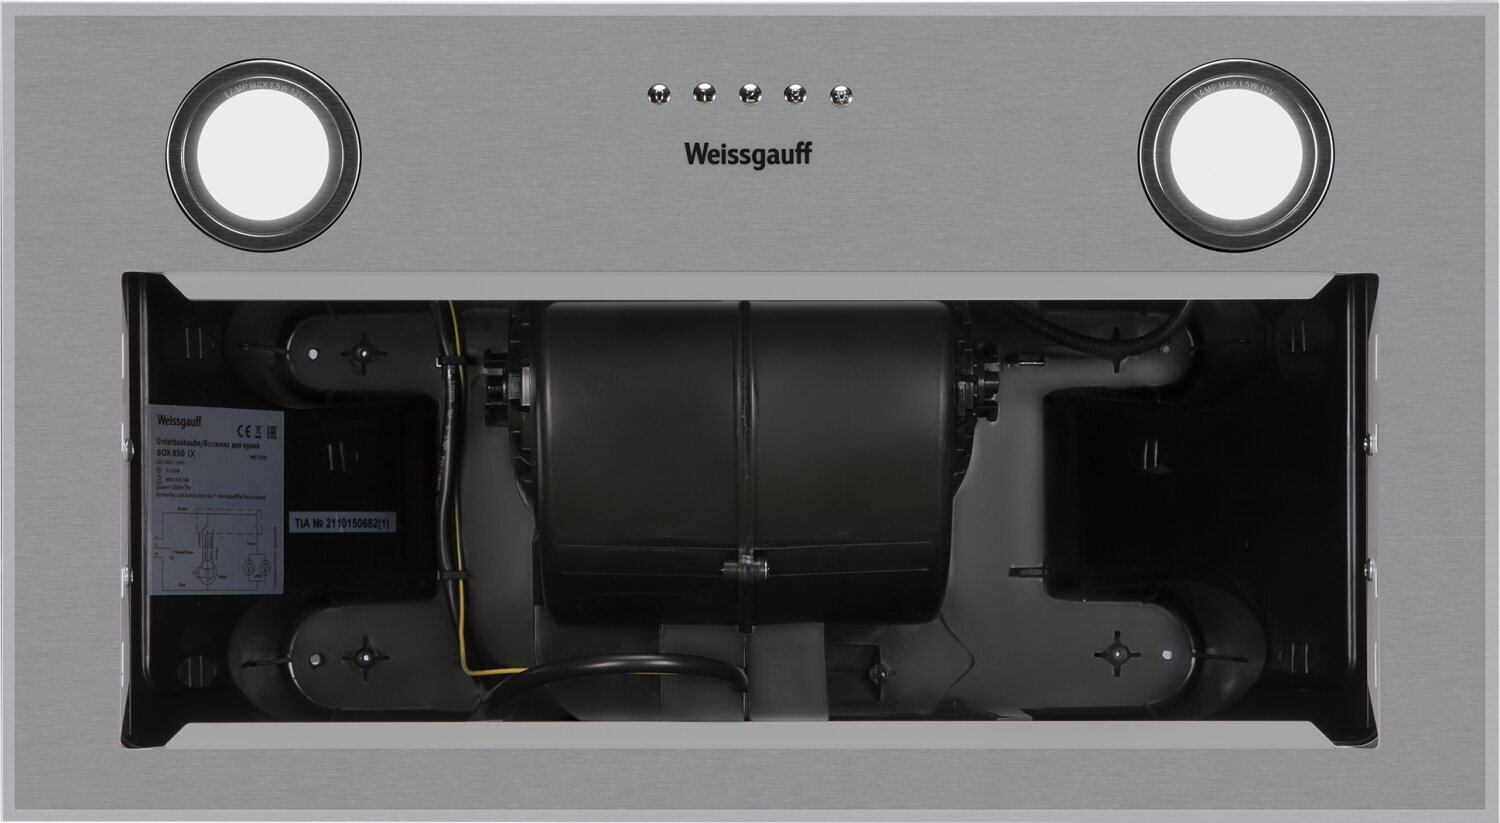 Кухонная встраиваемая вытяжка Weissgauff BOX 850 IX 3 года гарантии, Алюминиевый жировой фильтр, Низкий уровень шума